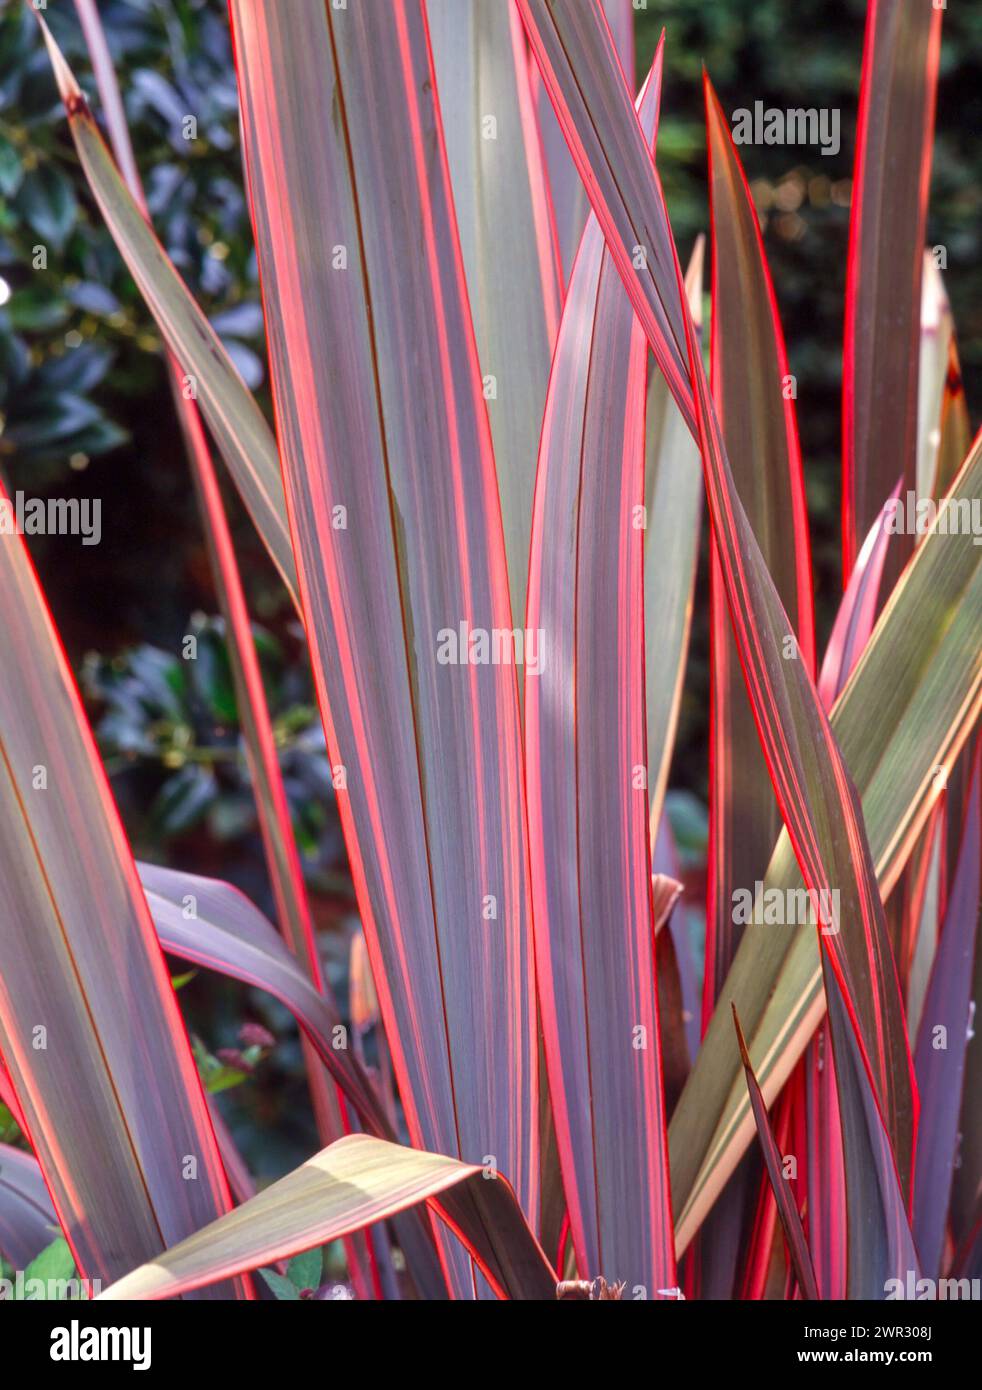 Primo piano di foglie colorate di tenax di Phormium a righe "Purpureum" (lino neozelandese) che crescono nel giardino inglese, Regno Unito Foto Stock